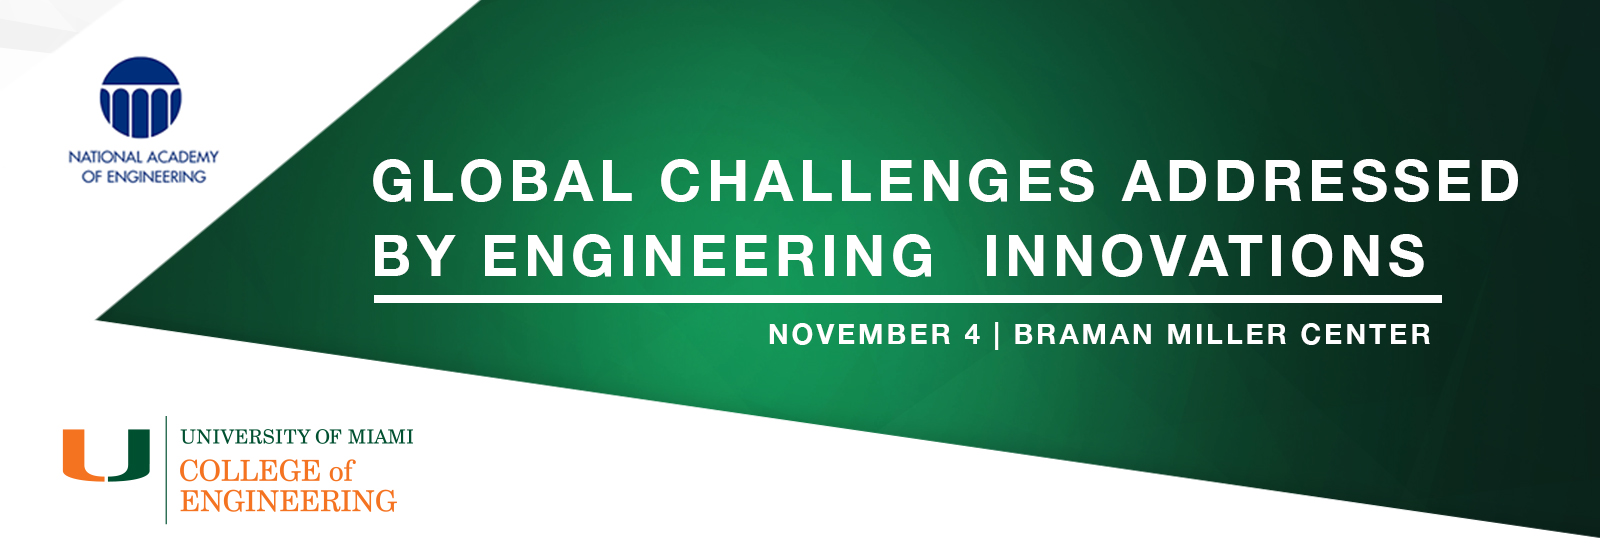 Global Challenges November 4